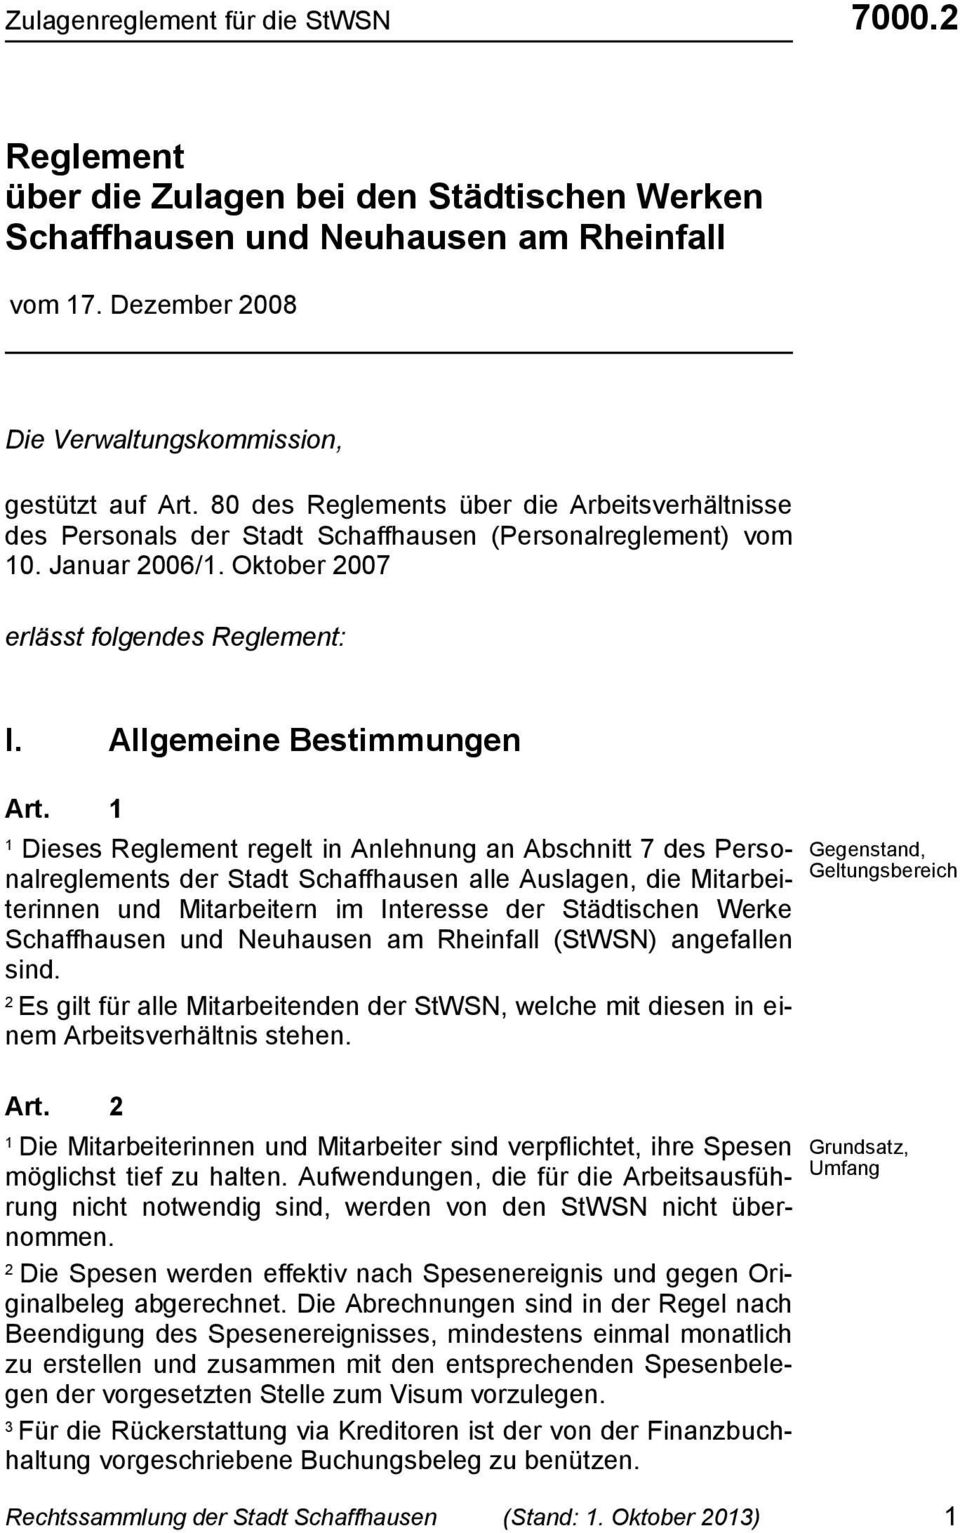 Dieses Reglement regelt in Anlehnung an Abschnitt 7 des Personalreglements der Stadt Schaffhausen alle Auslagen, die Mitarbeiterinnen und Mitarbeitern im Interesse der Städtischen Werke Schaffhausen